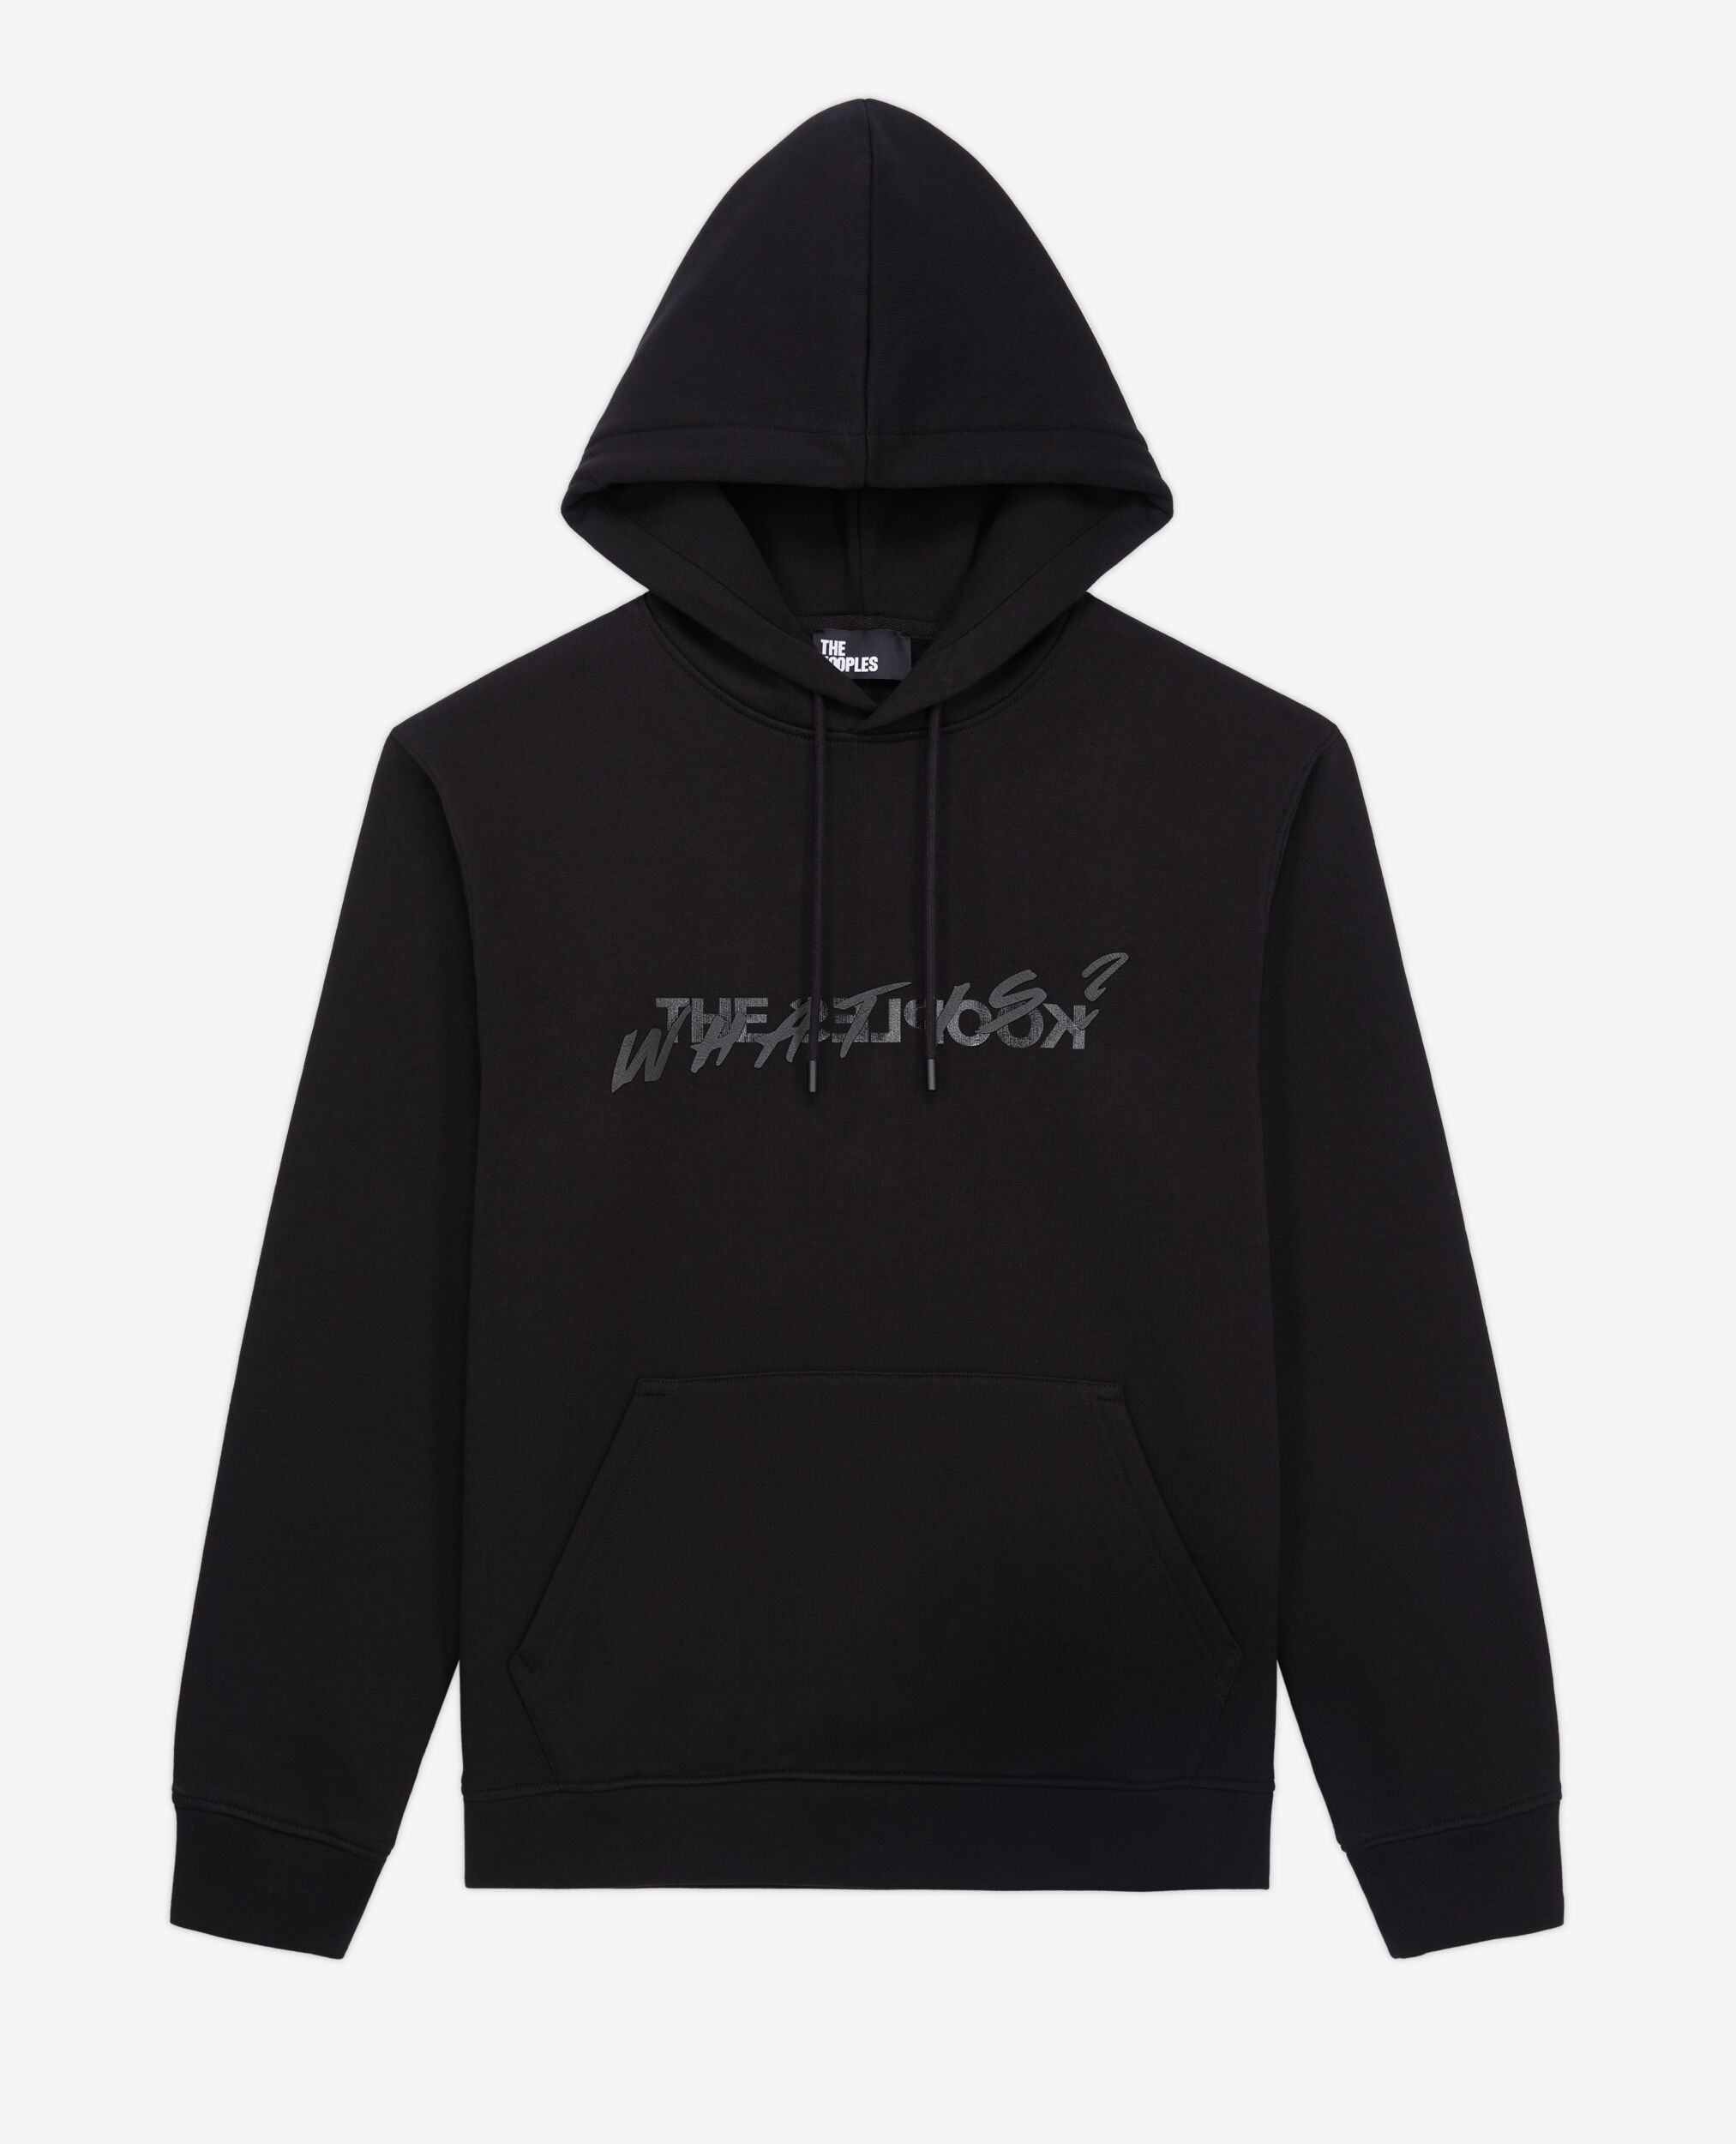 Black What is hoodie, BLACK, hi-res image number null